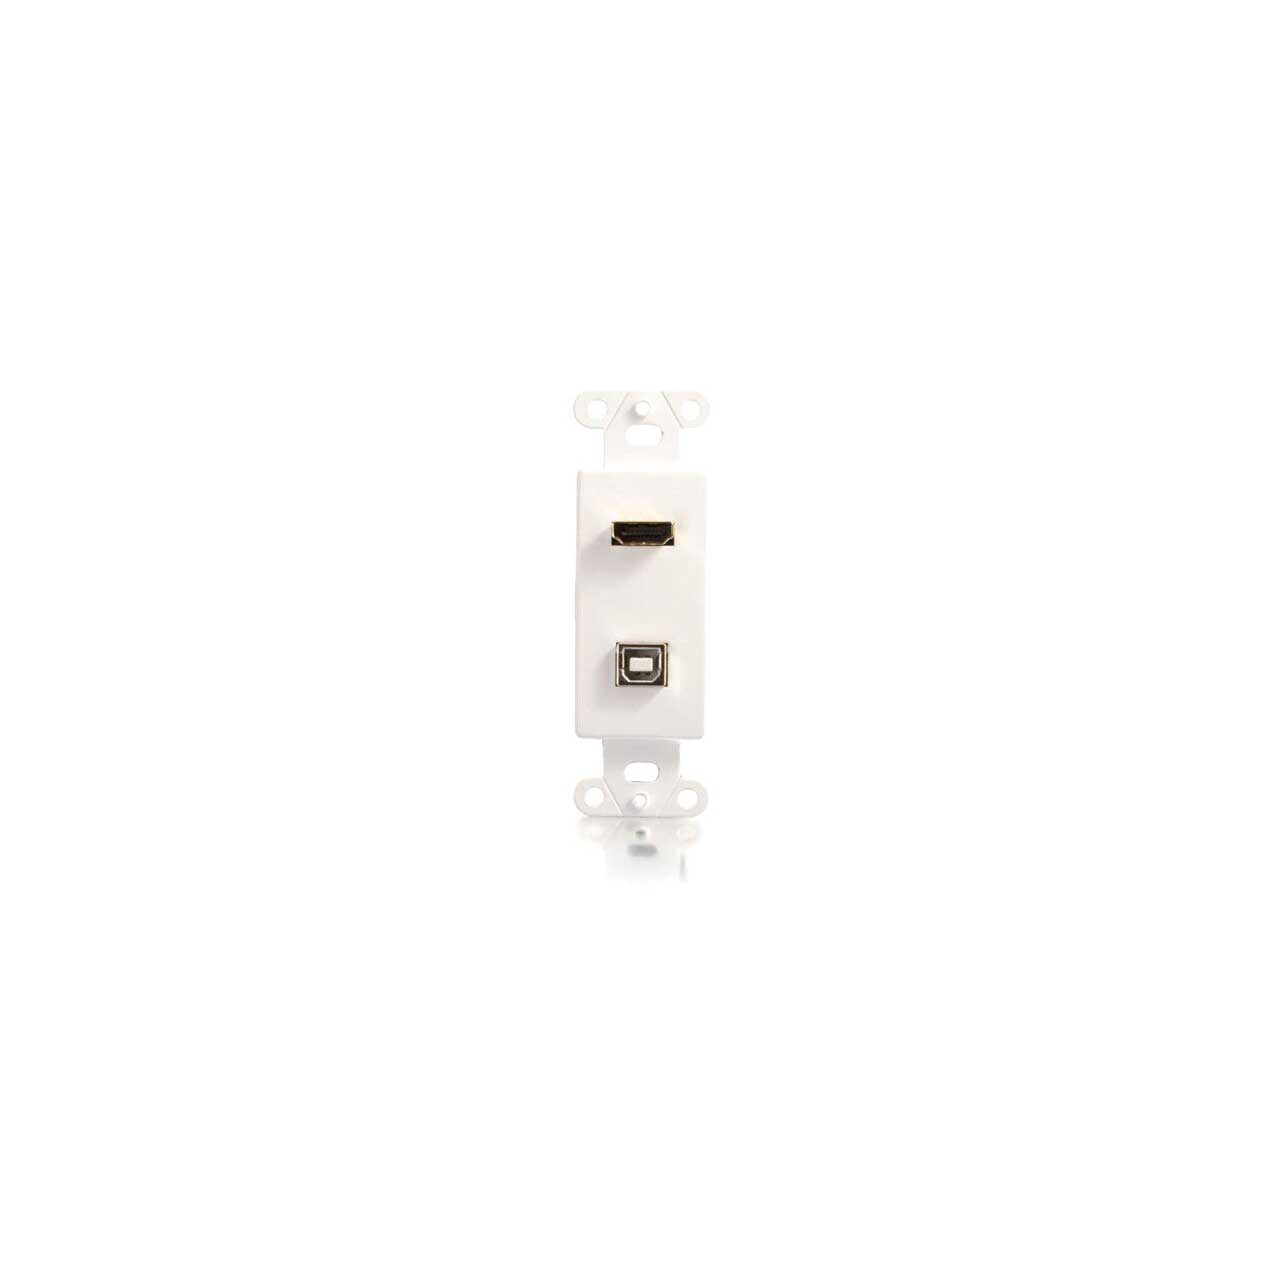 C2G 39702 Decora HDMI / USB Pass Through Wall Plate - White CG39702